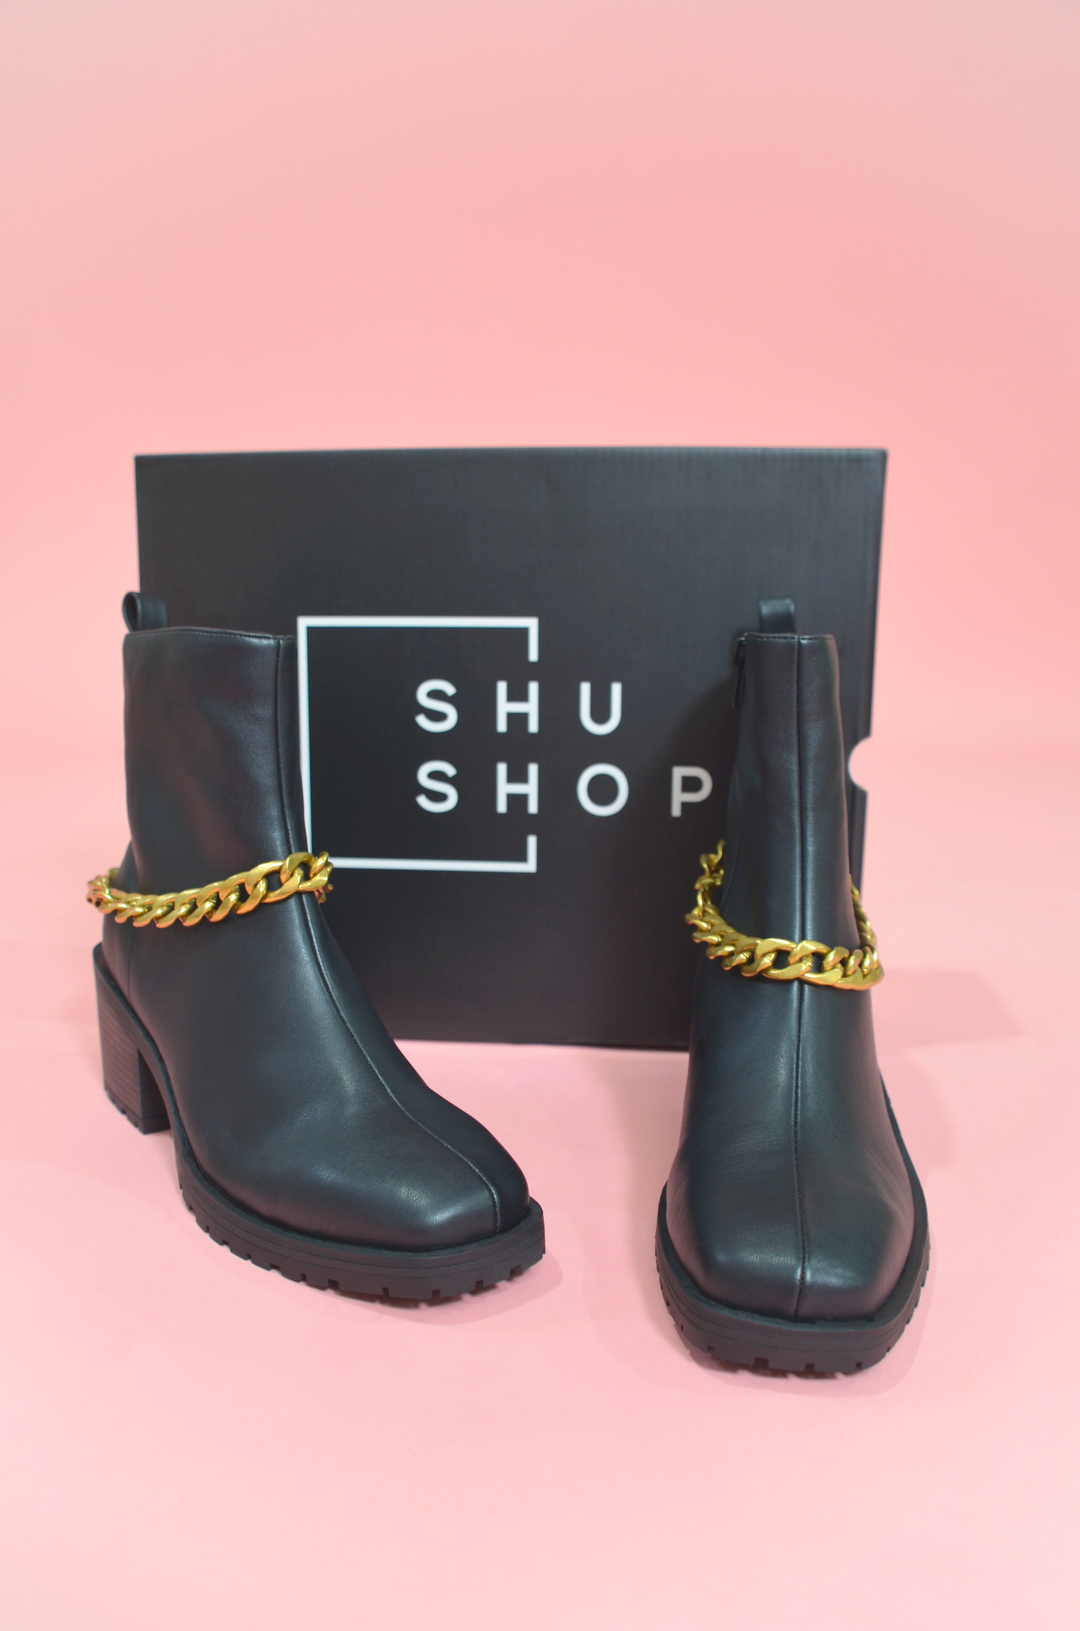 Shu Shop - Yenni Gold Chain Black Boots